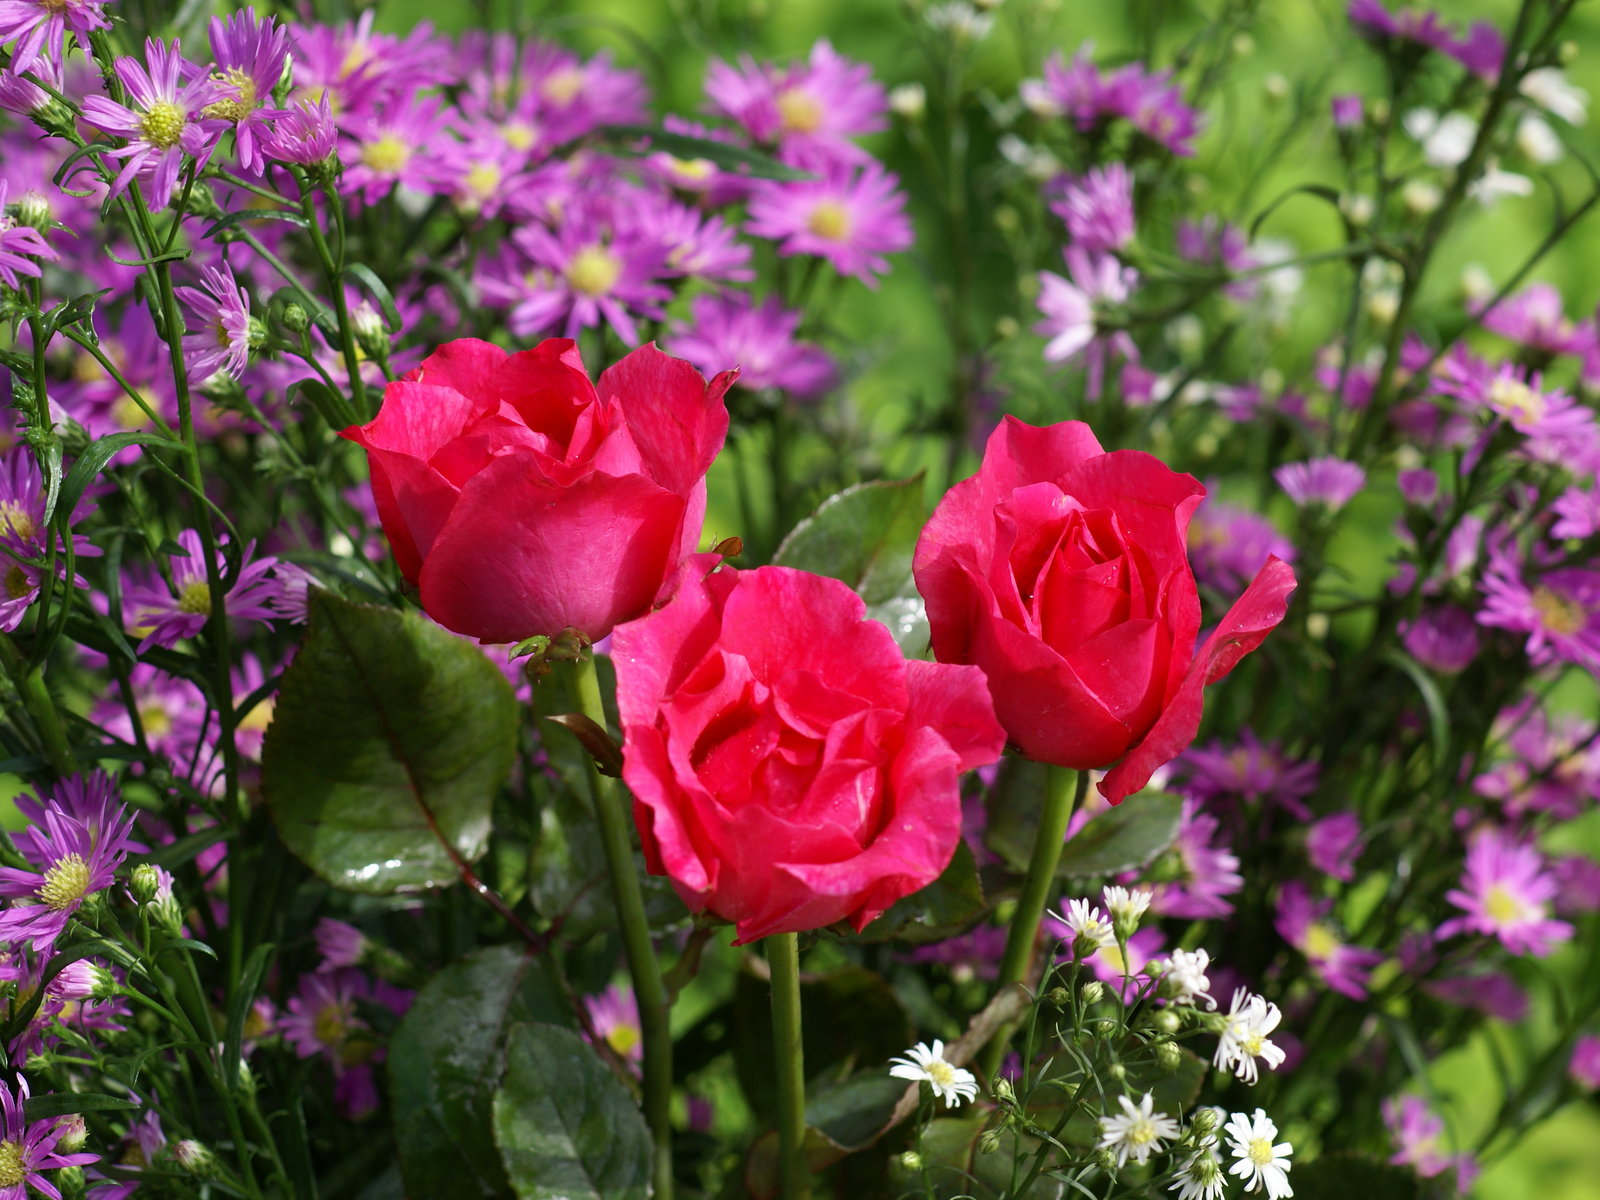 schönsten rosentapeten,blume,blühende pflanze,blütenblatt,pflanze,natur